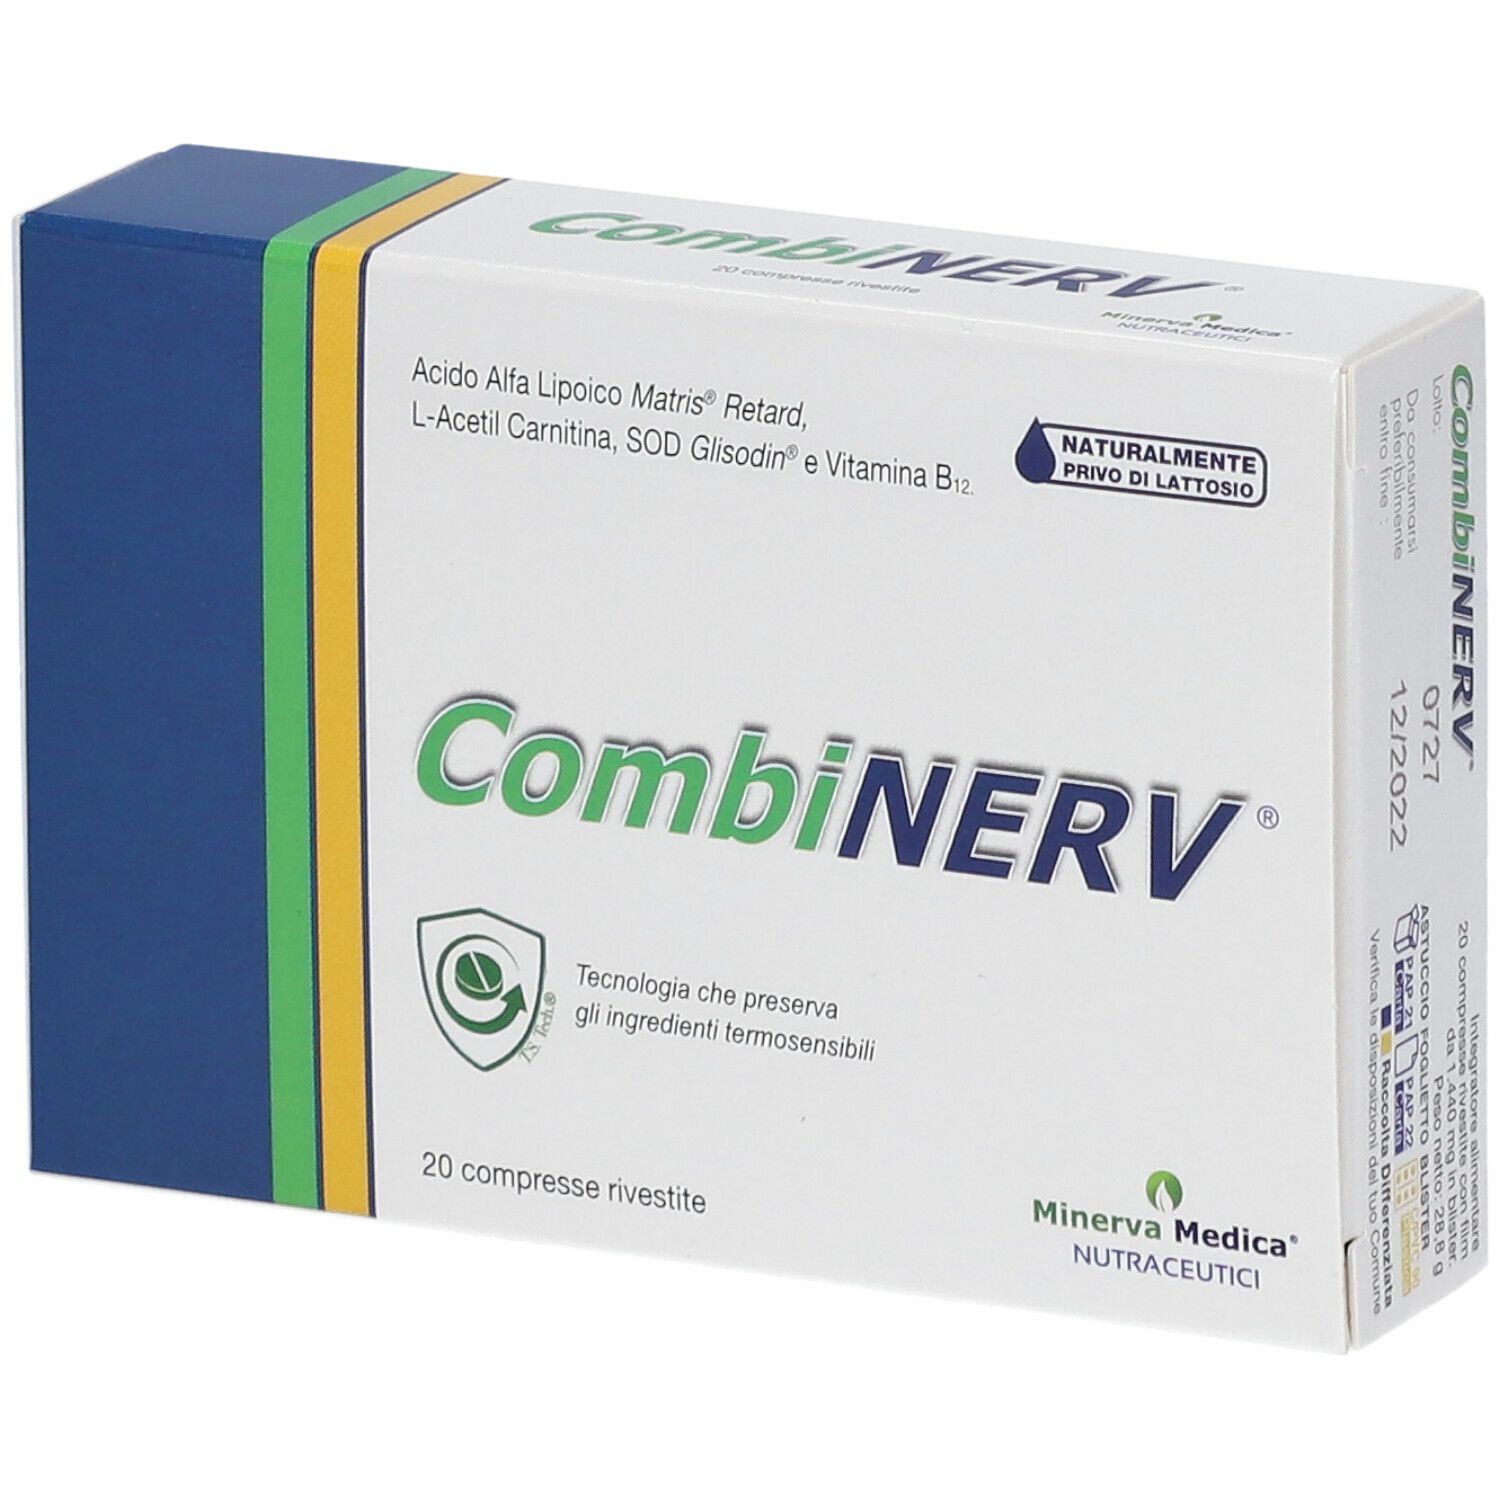 CombiNERV® Compresse